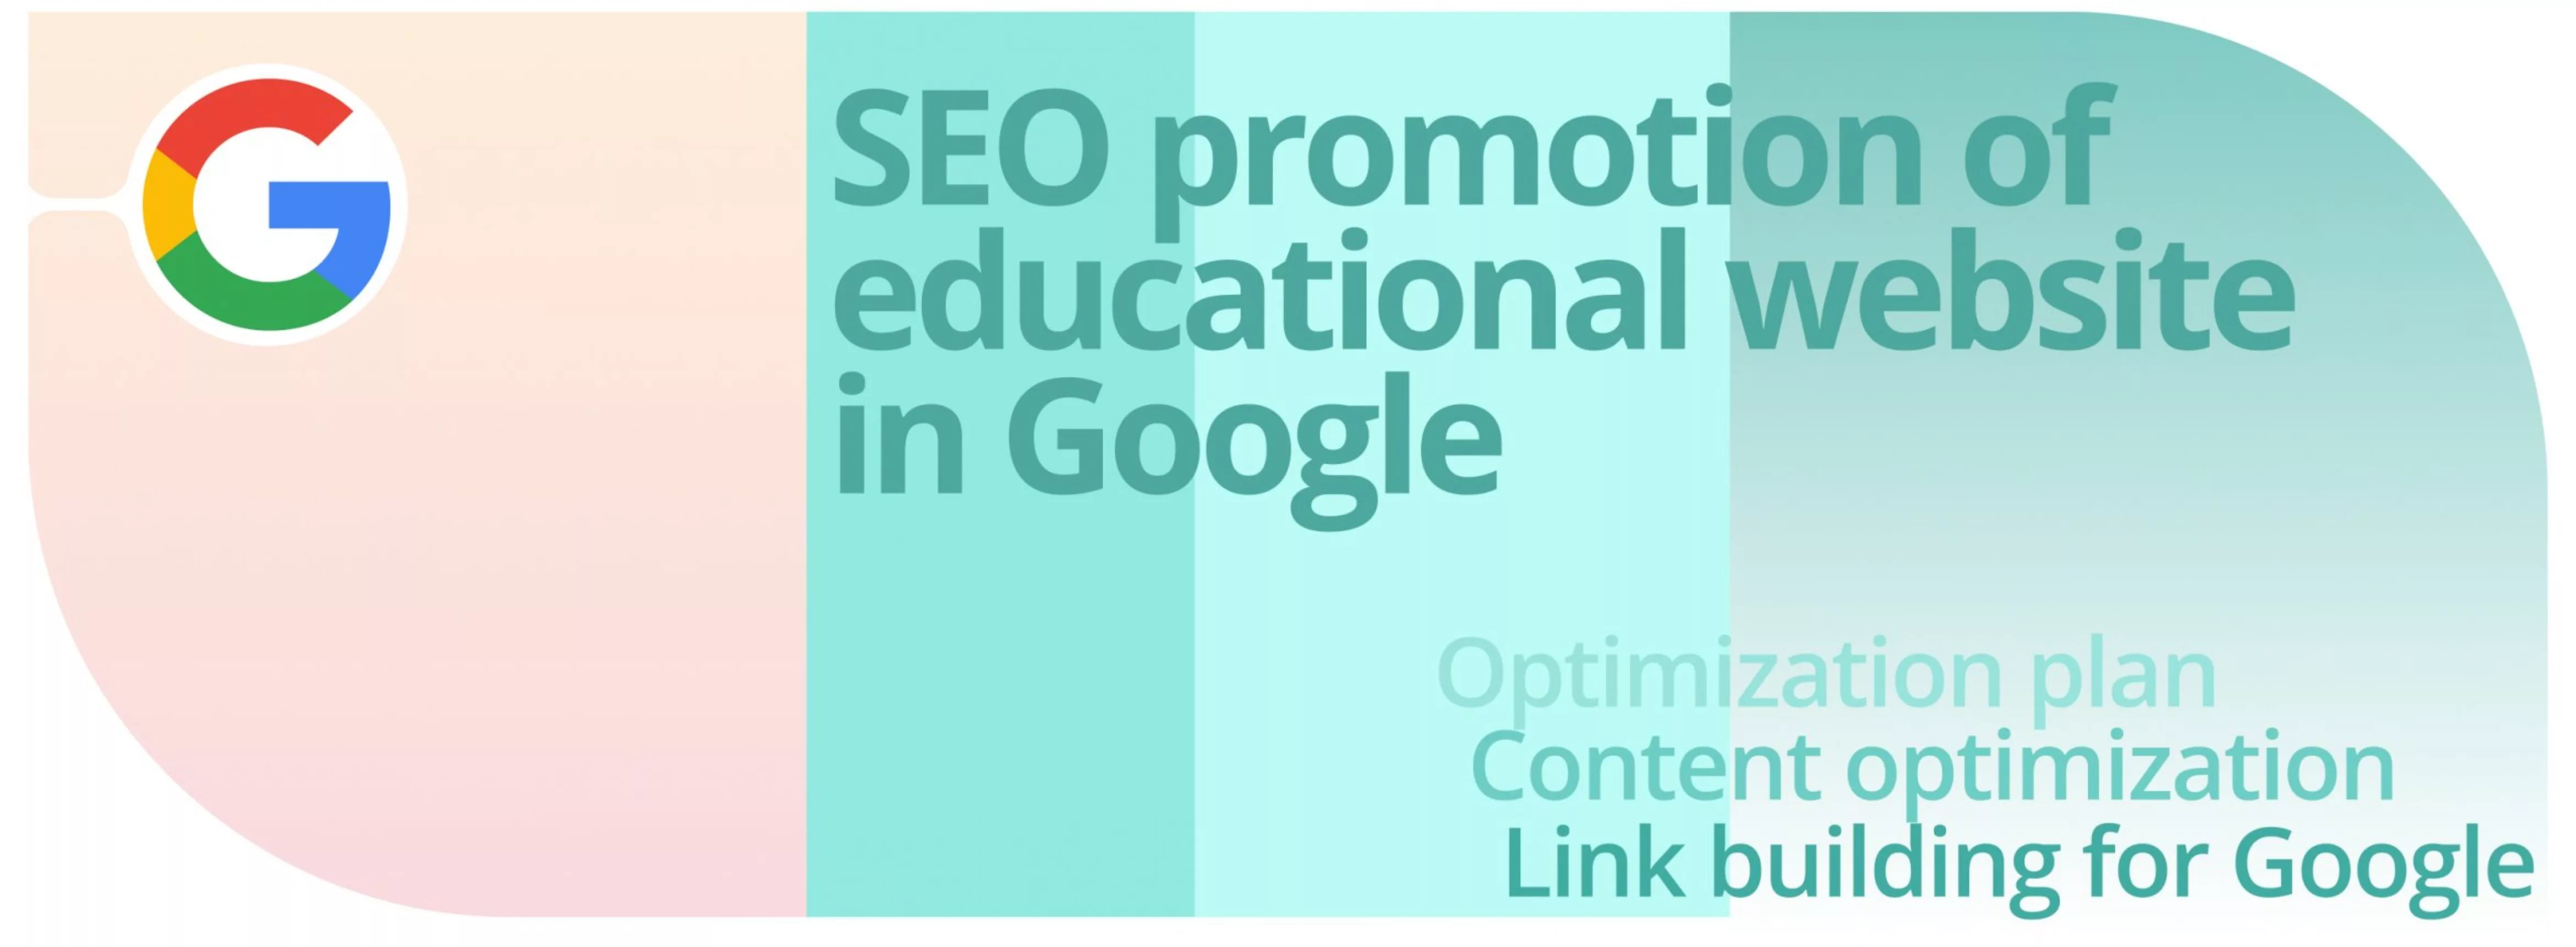 Caso: promozione SEO di un sito web educativo su Google.